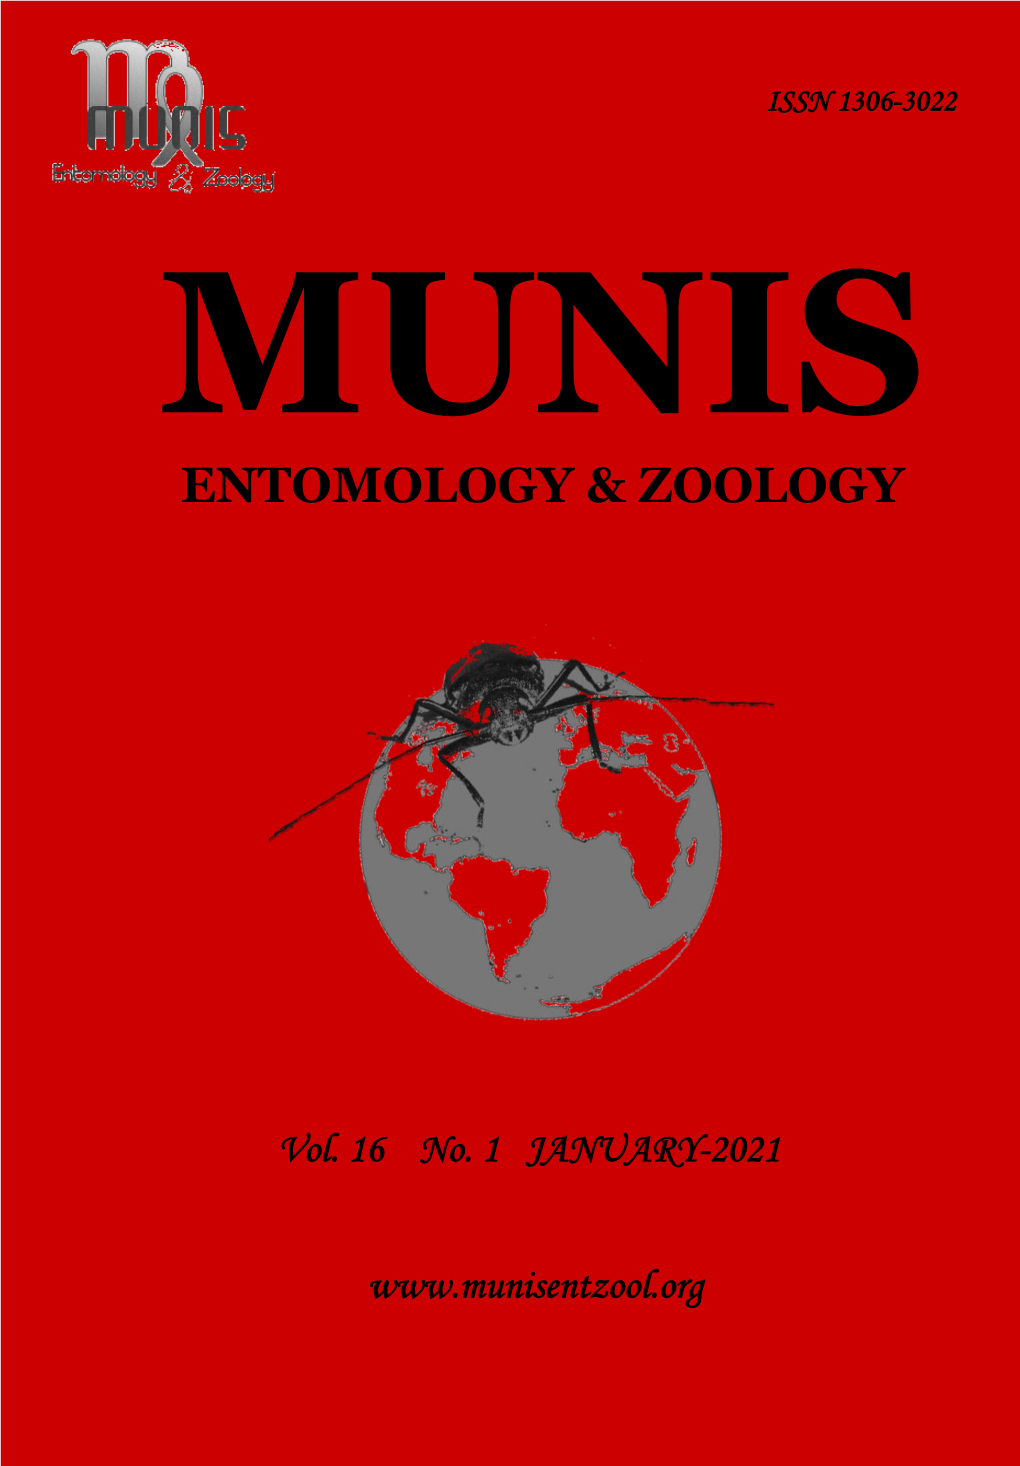 Munis Entomology & Zoology